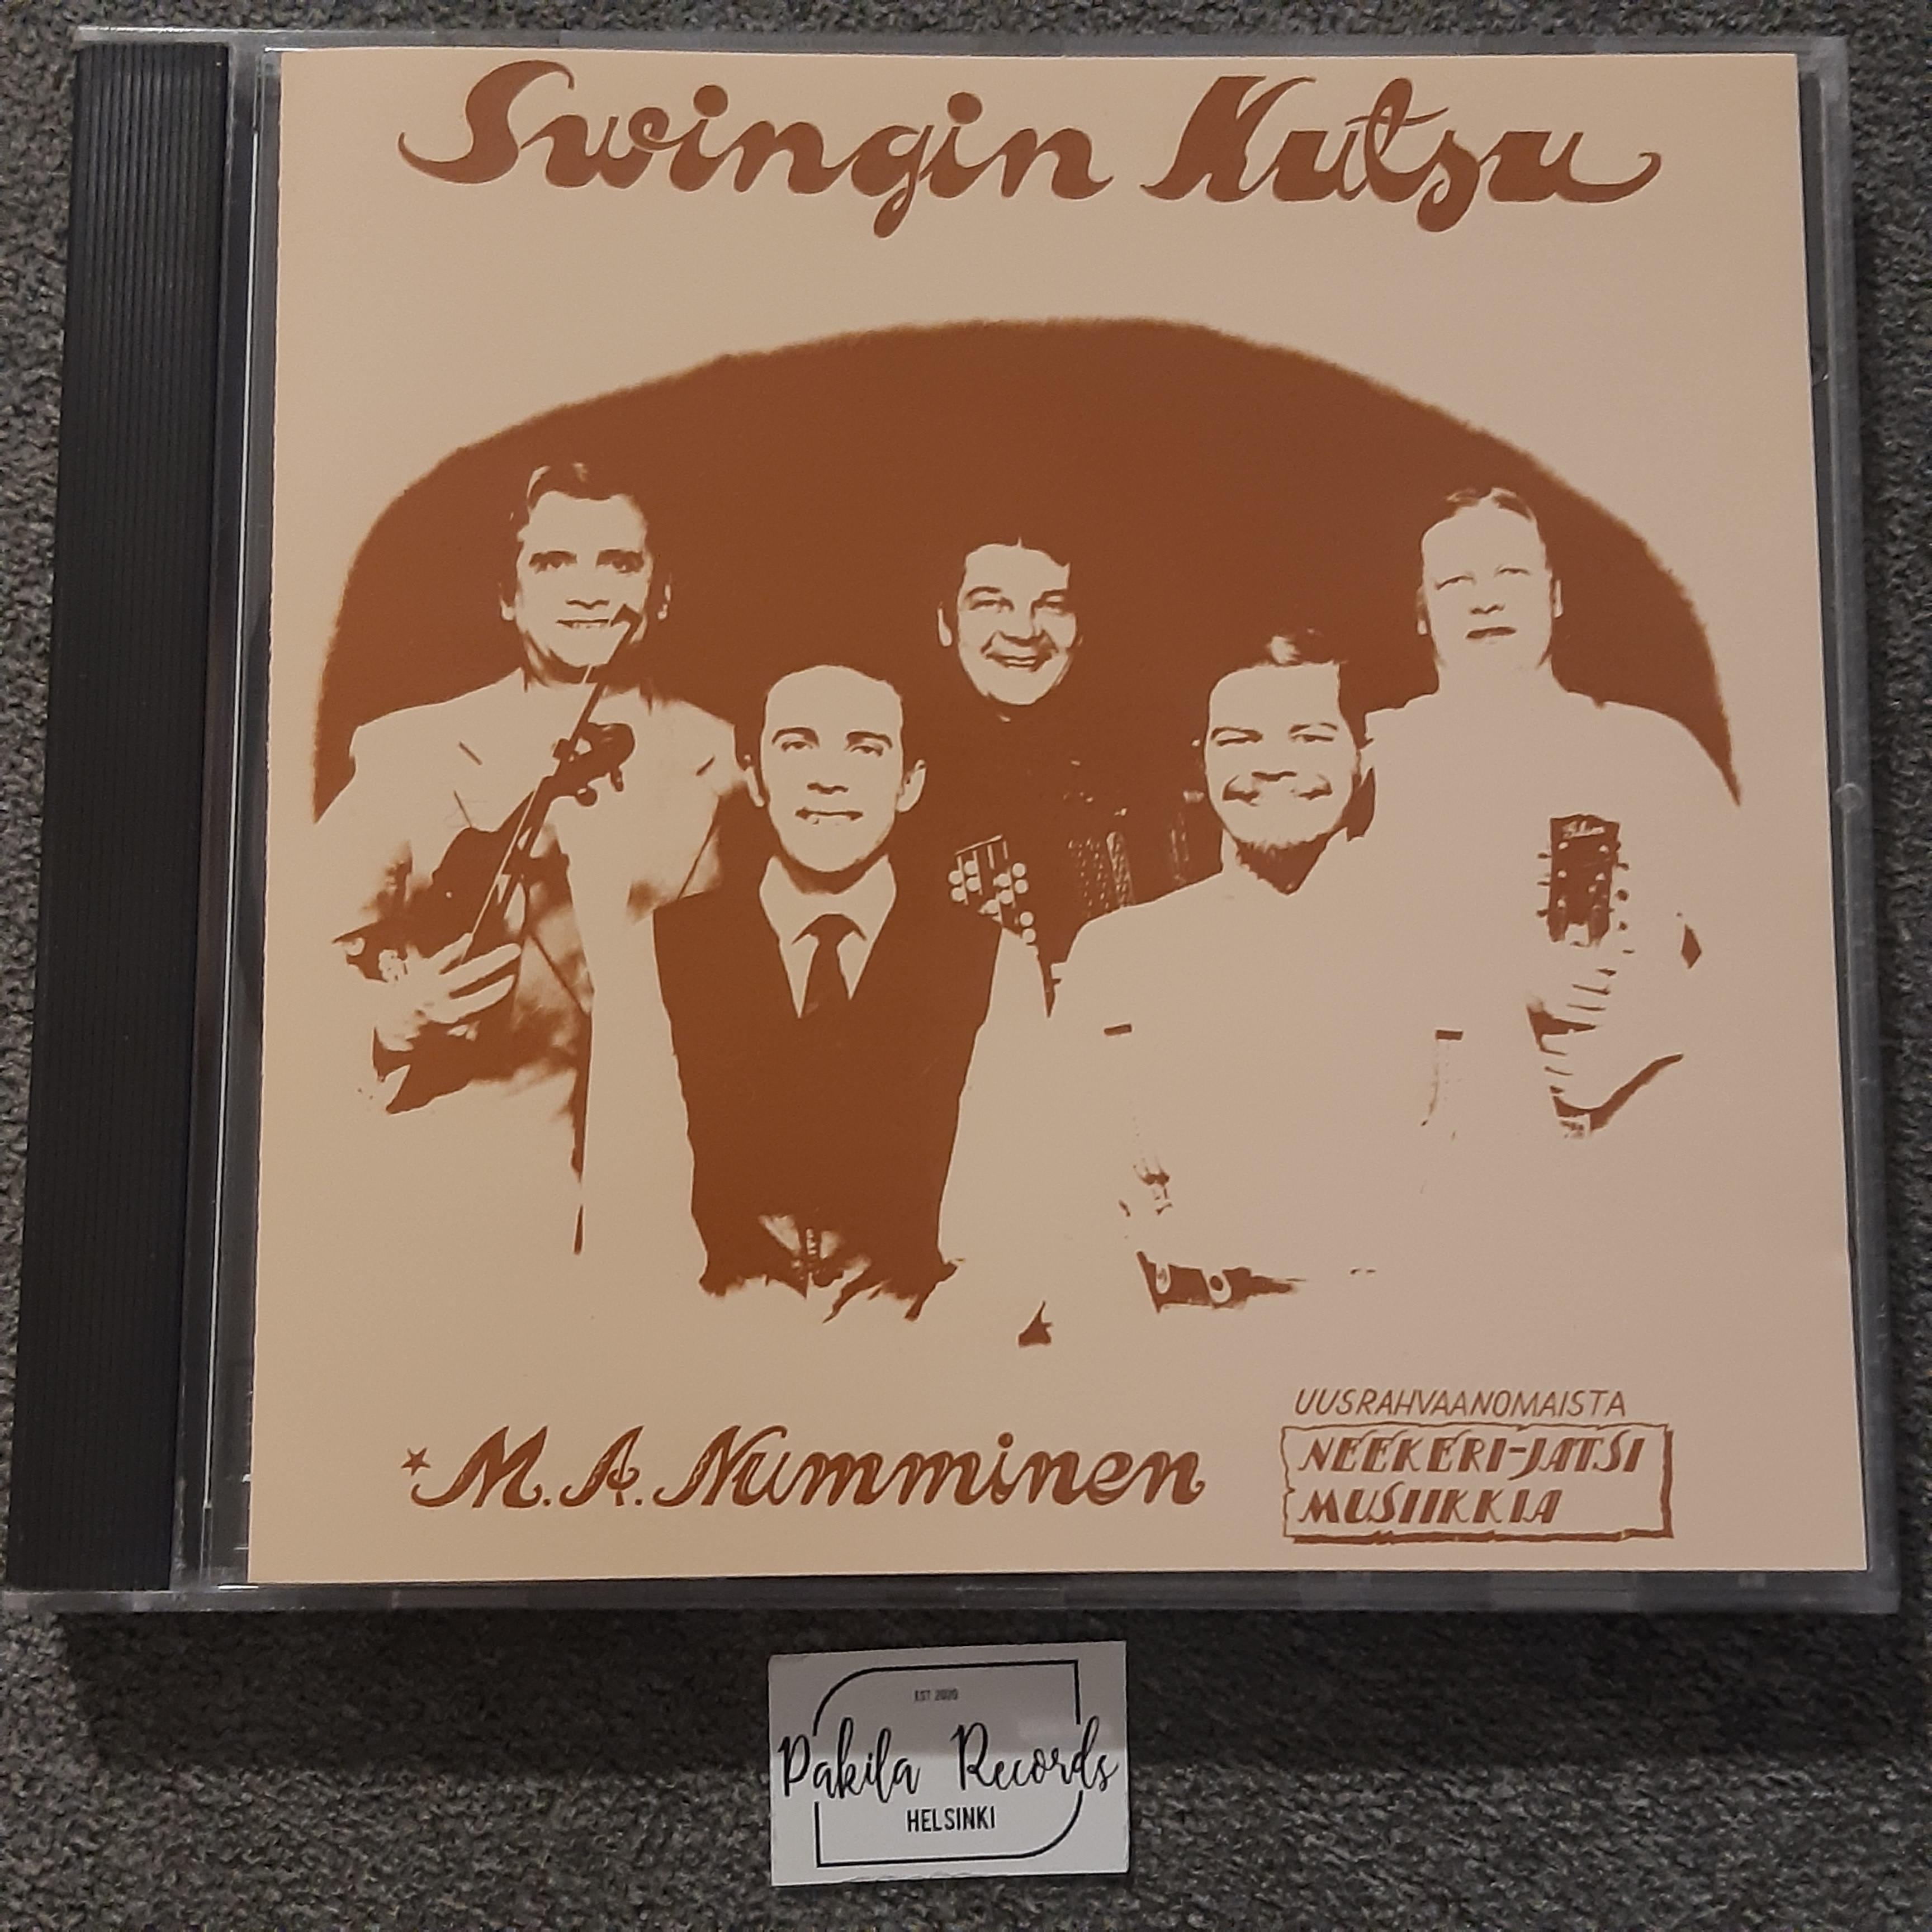 M.A. Numminen - Swingin kutsu - CD (käytetty)